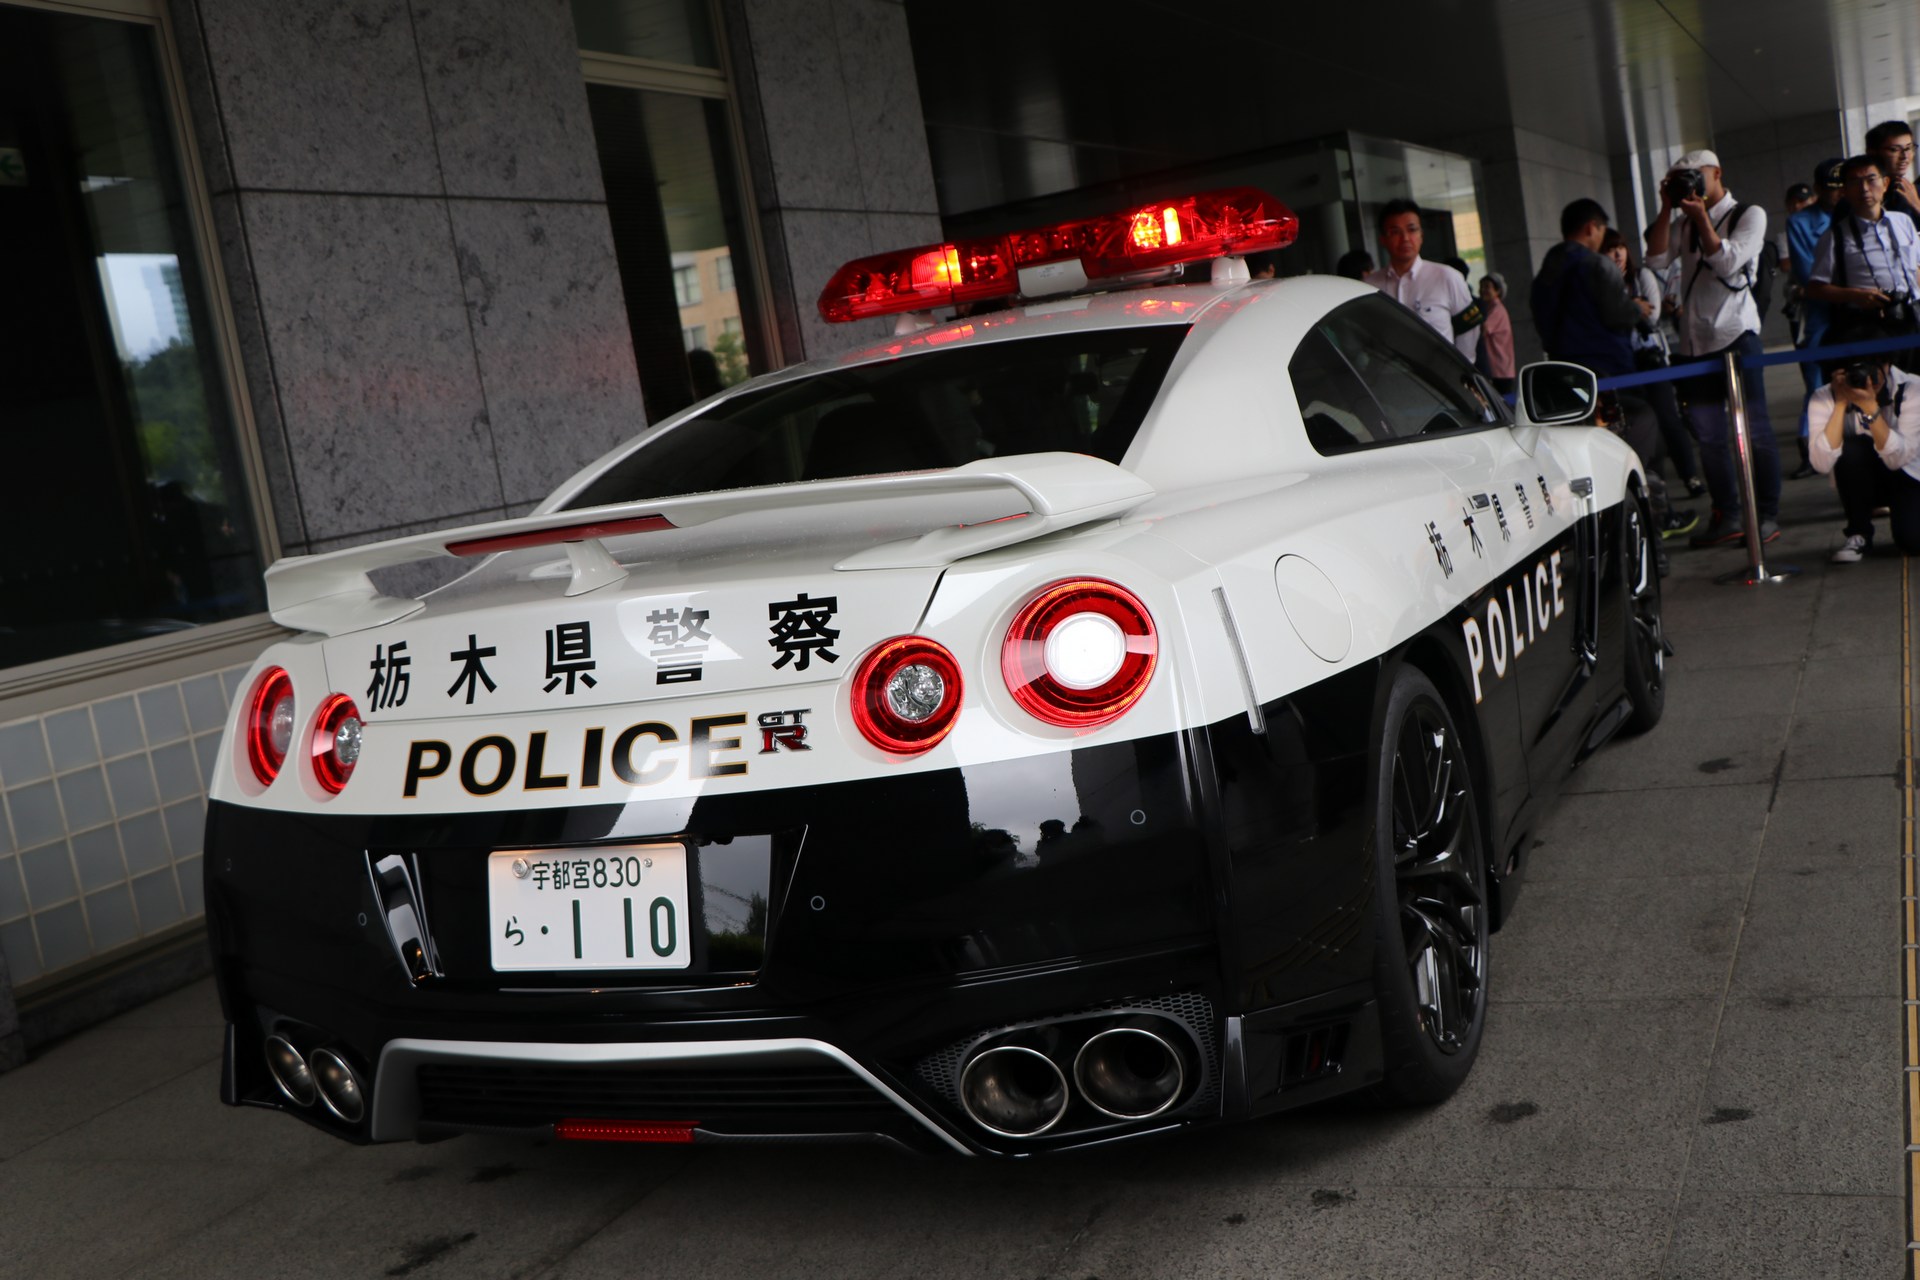 "بالصور" نيسان GT-R تدخل الخدمة رسميا بأسطول الشرطة اليابانية 11